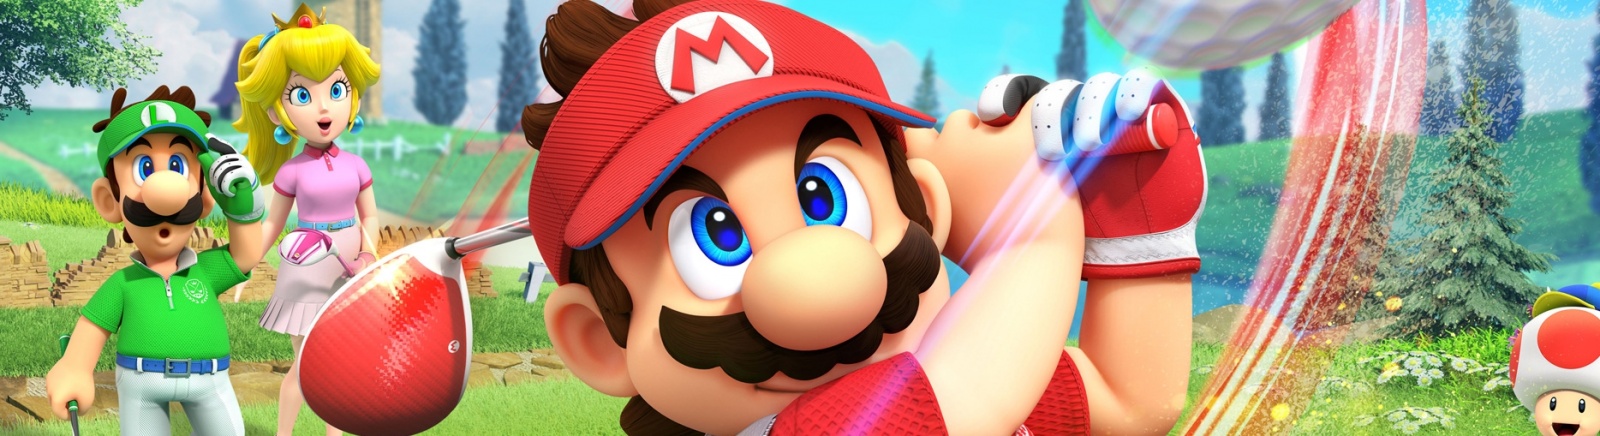 Дата выхода Mario Golf: Super Rush  на Nintendo Switch в России и во всем мире